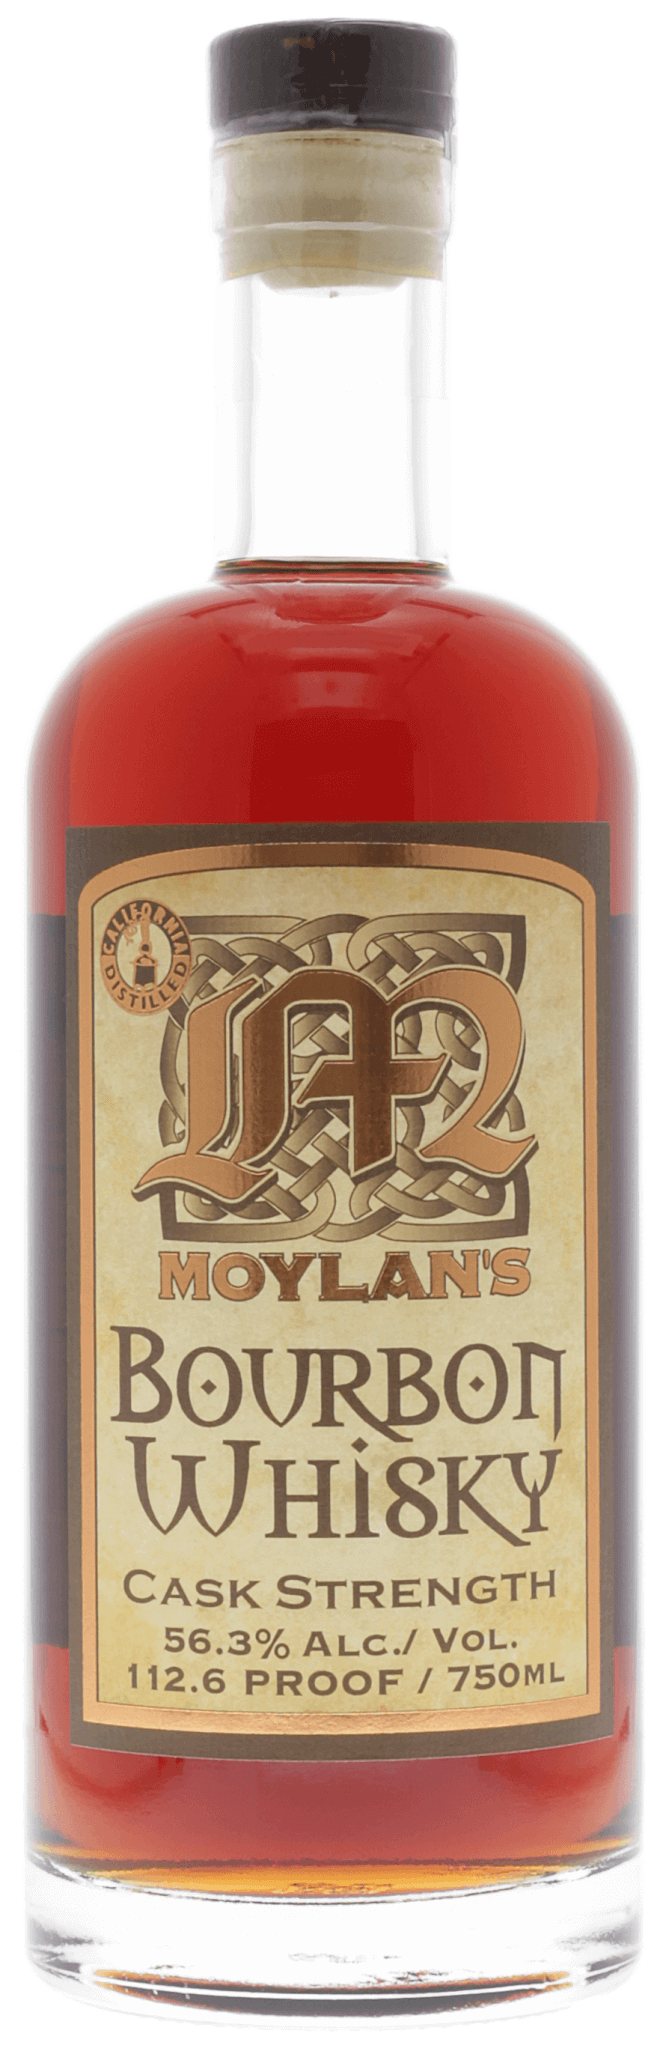 Moylan's Cask Strength Bourbon Whisky